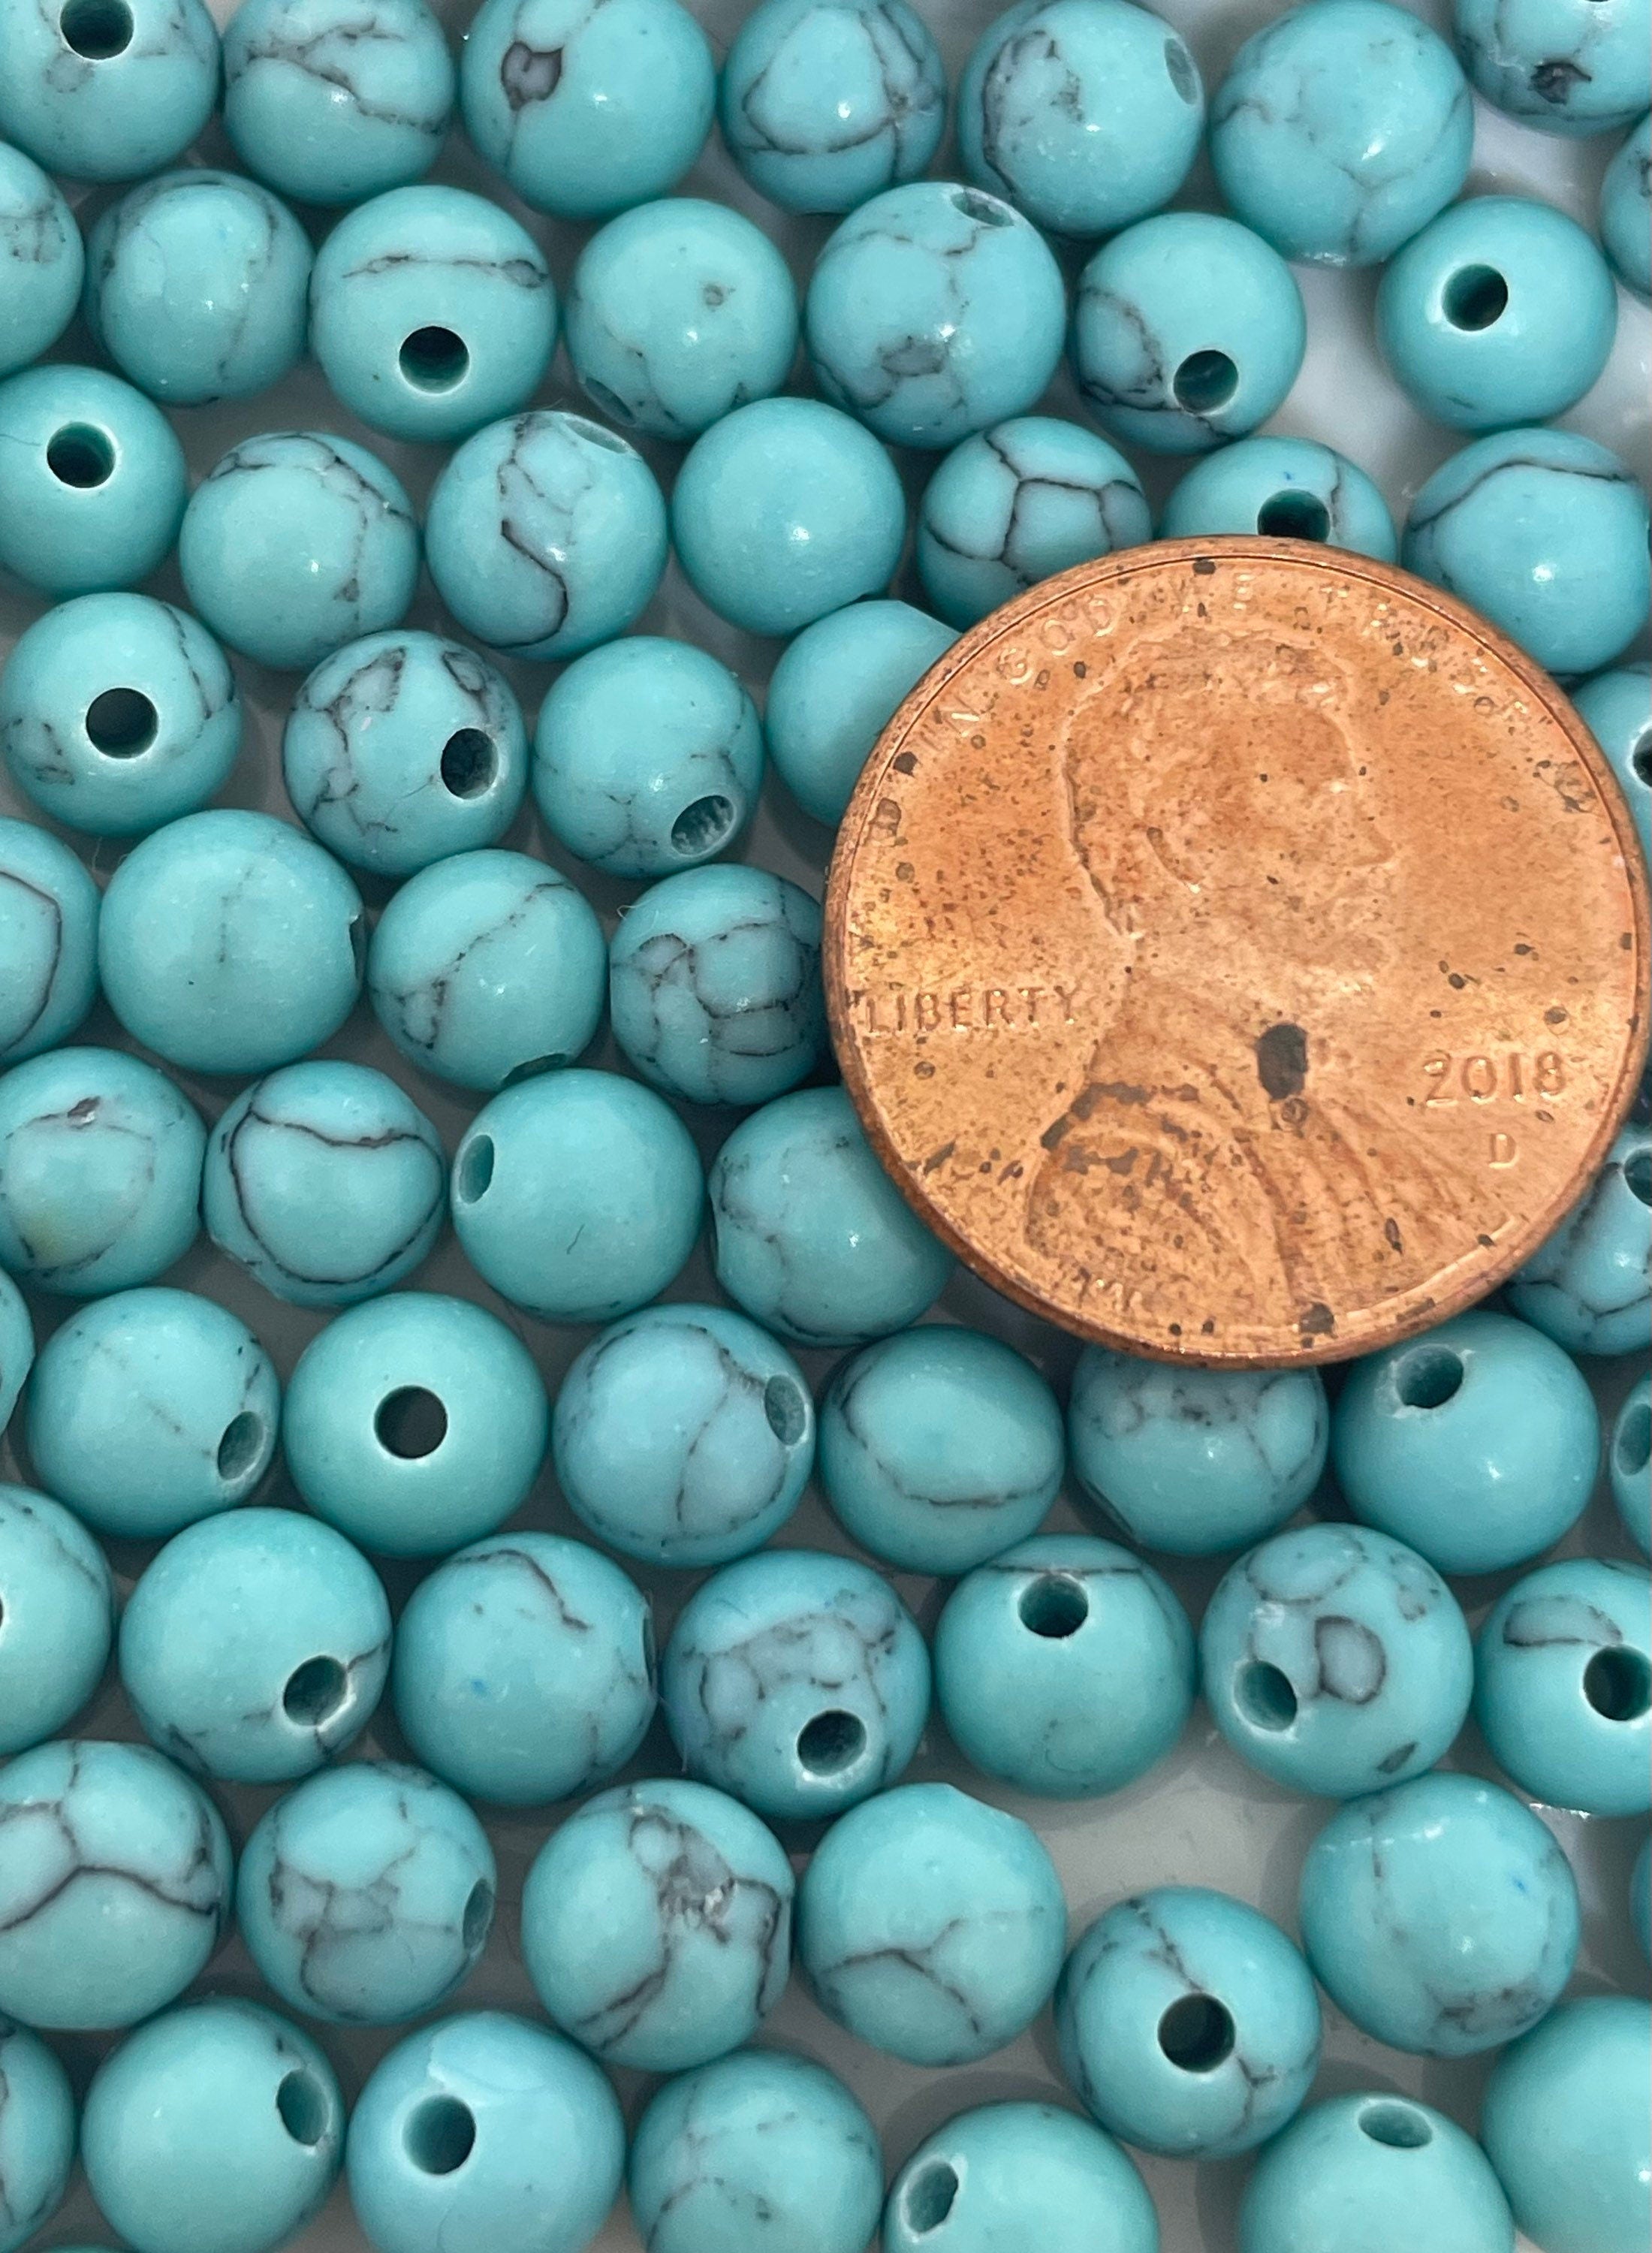 6mm Beautiful Lake Blue Turquoise Beads